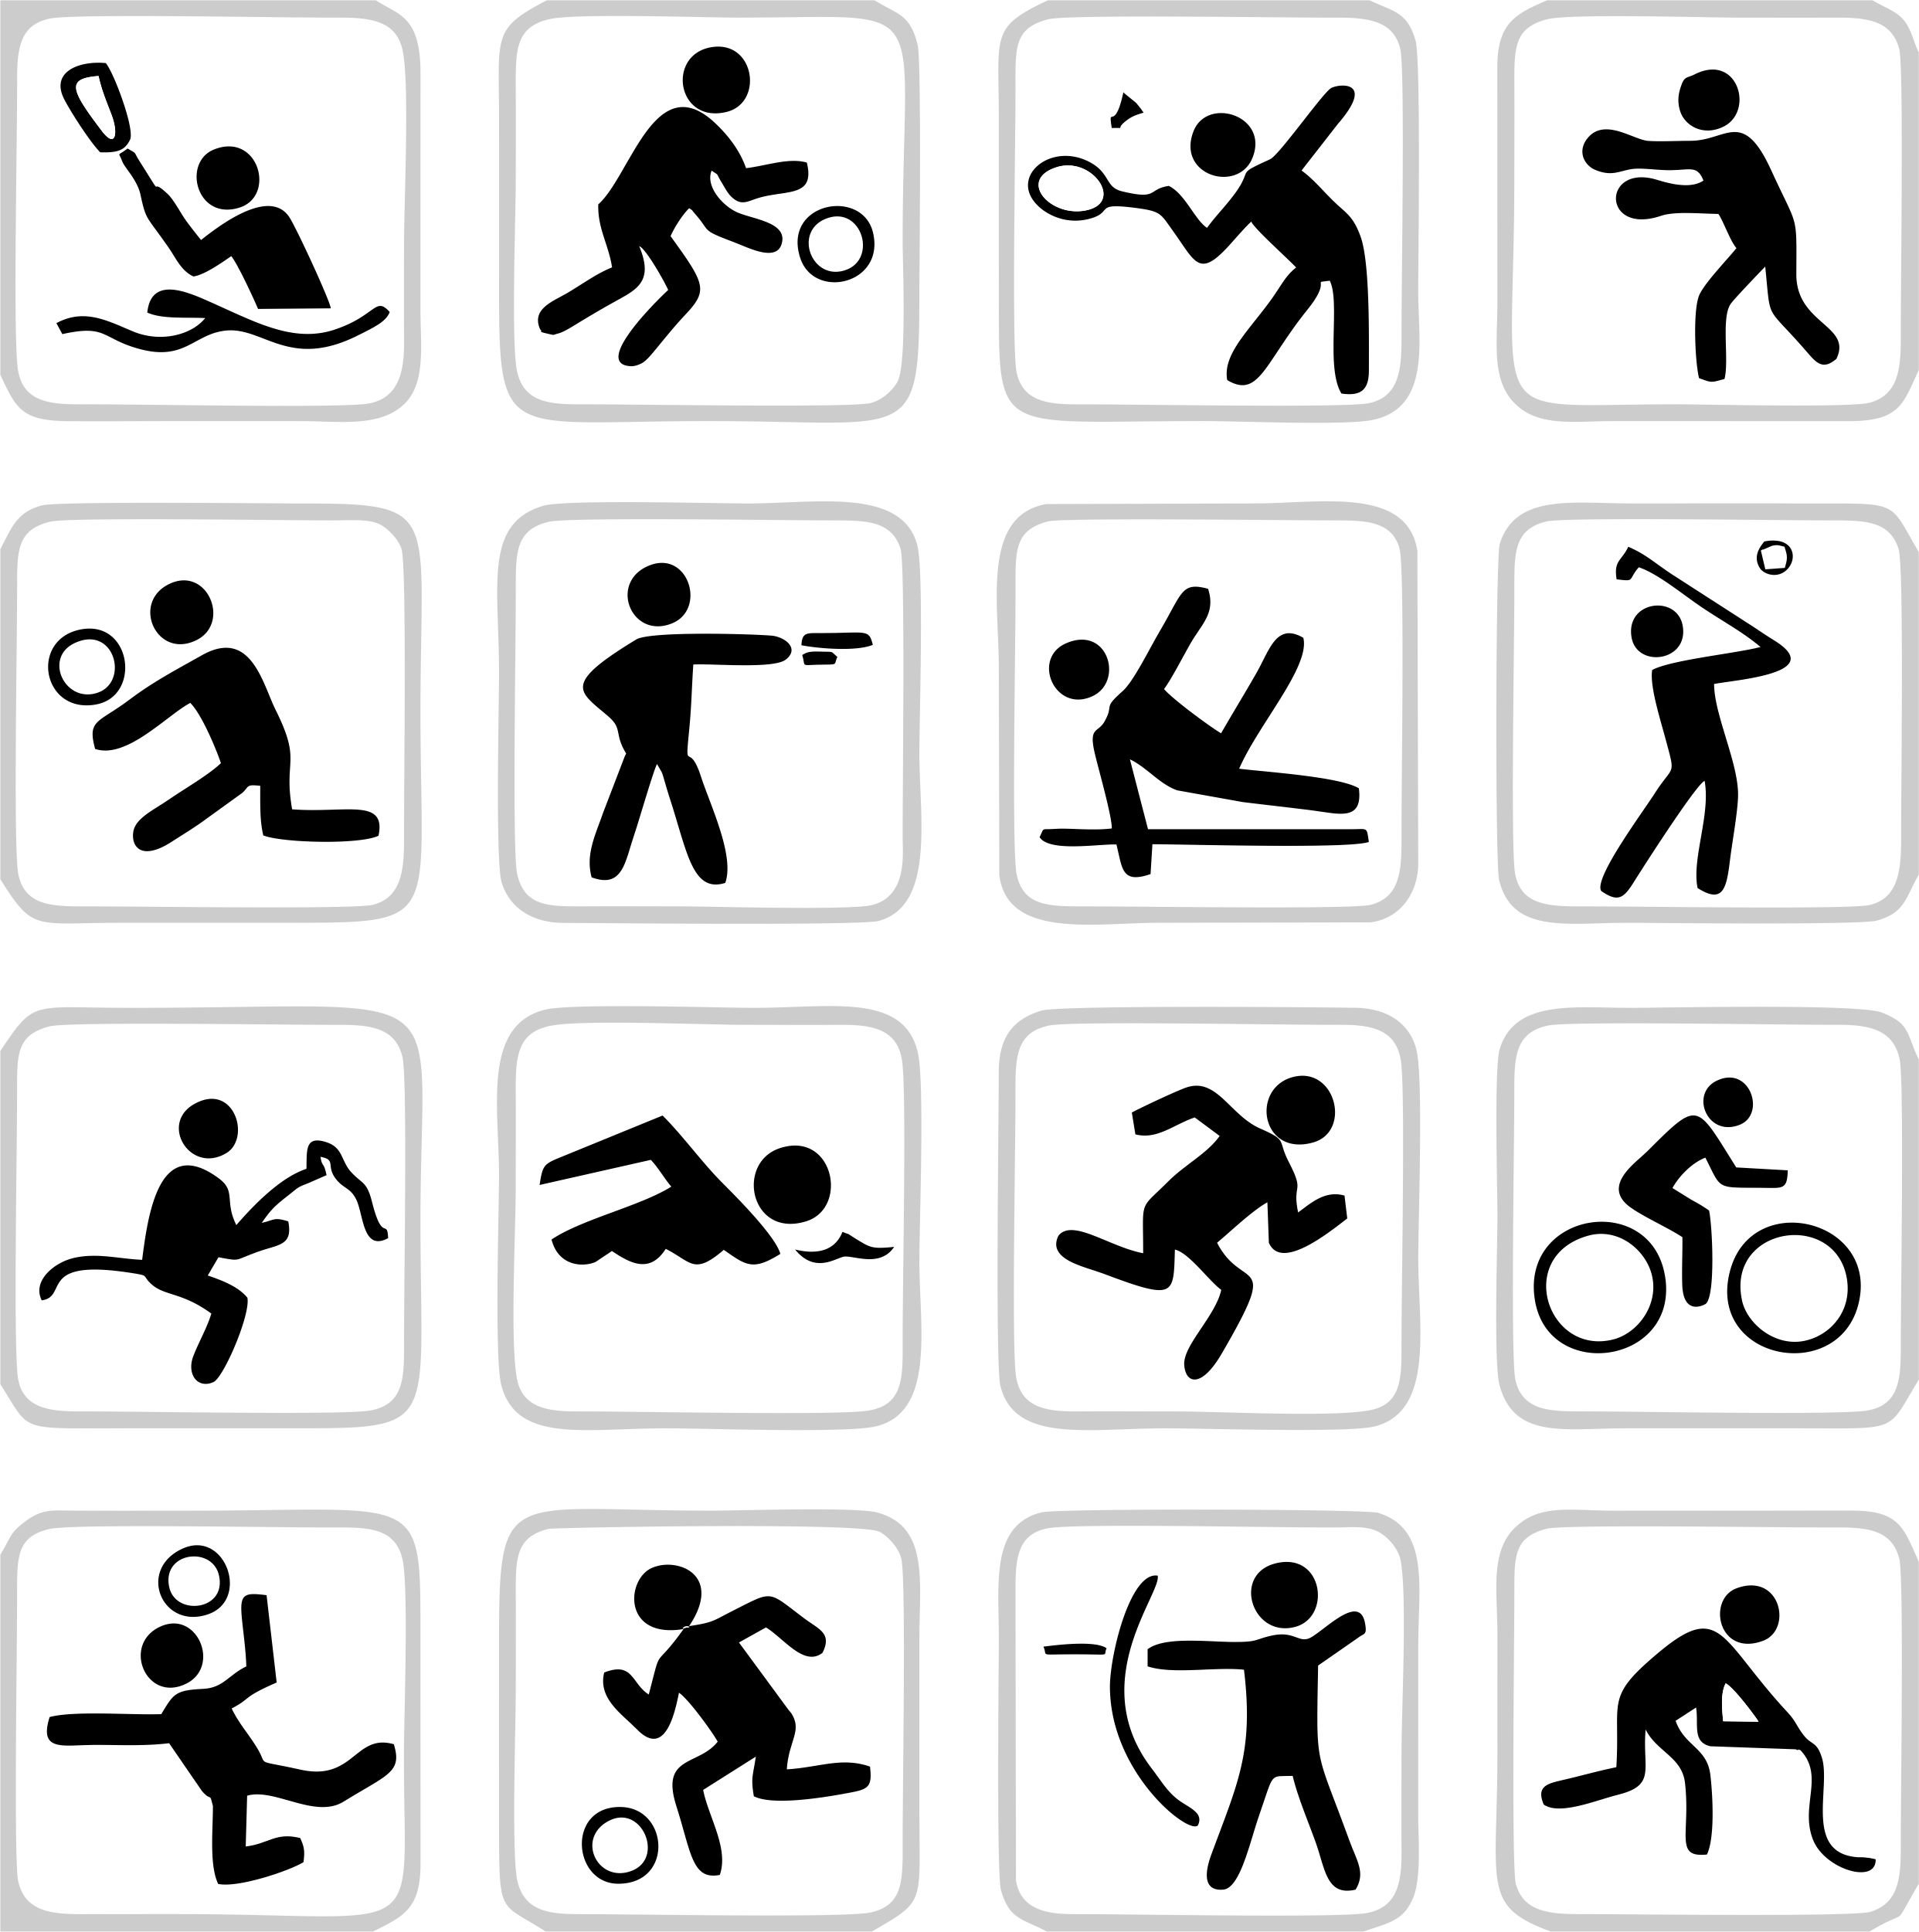 Символы видов спорта